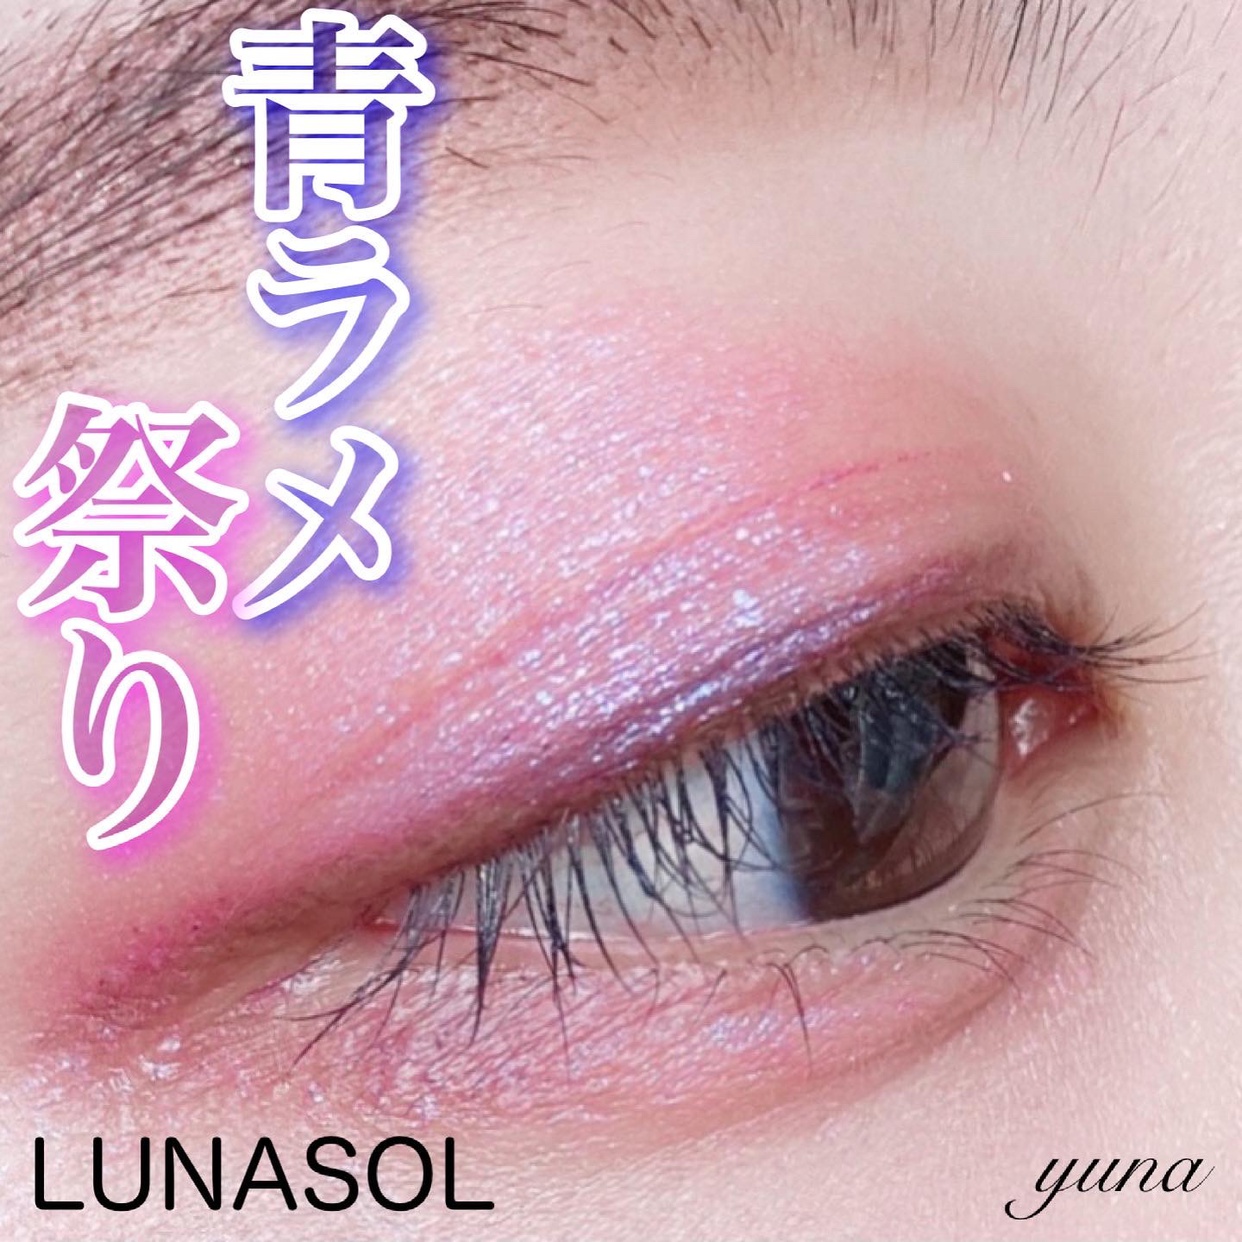 LUNASOL(ルナソル) アイカラーレーションの良い点・メリットに関するyunaさんの口コミ画像2